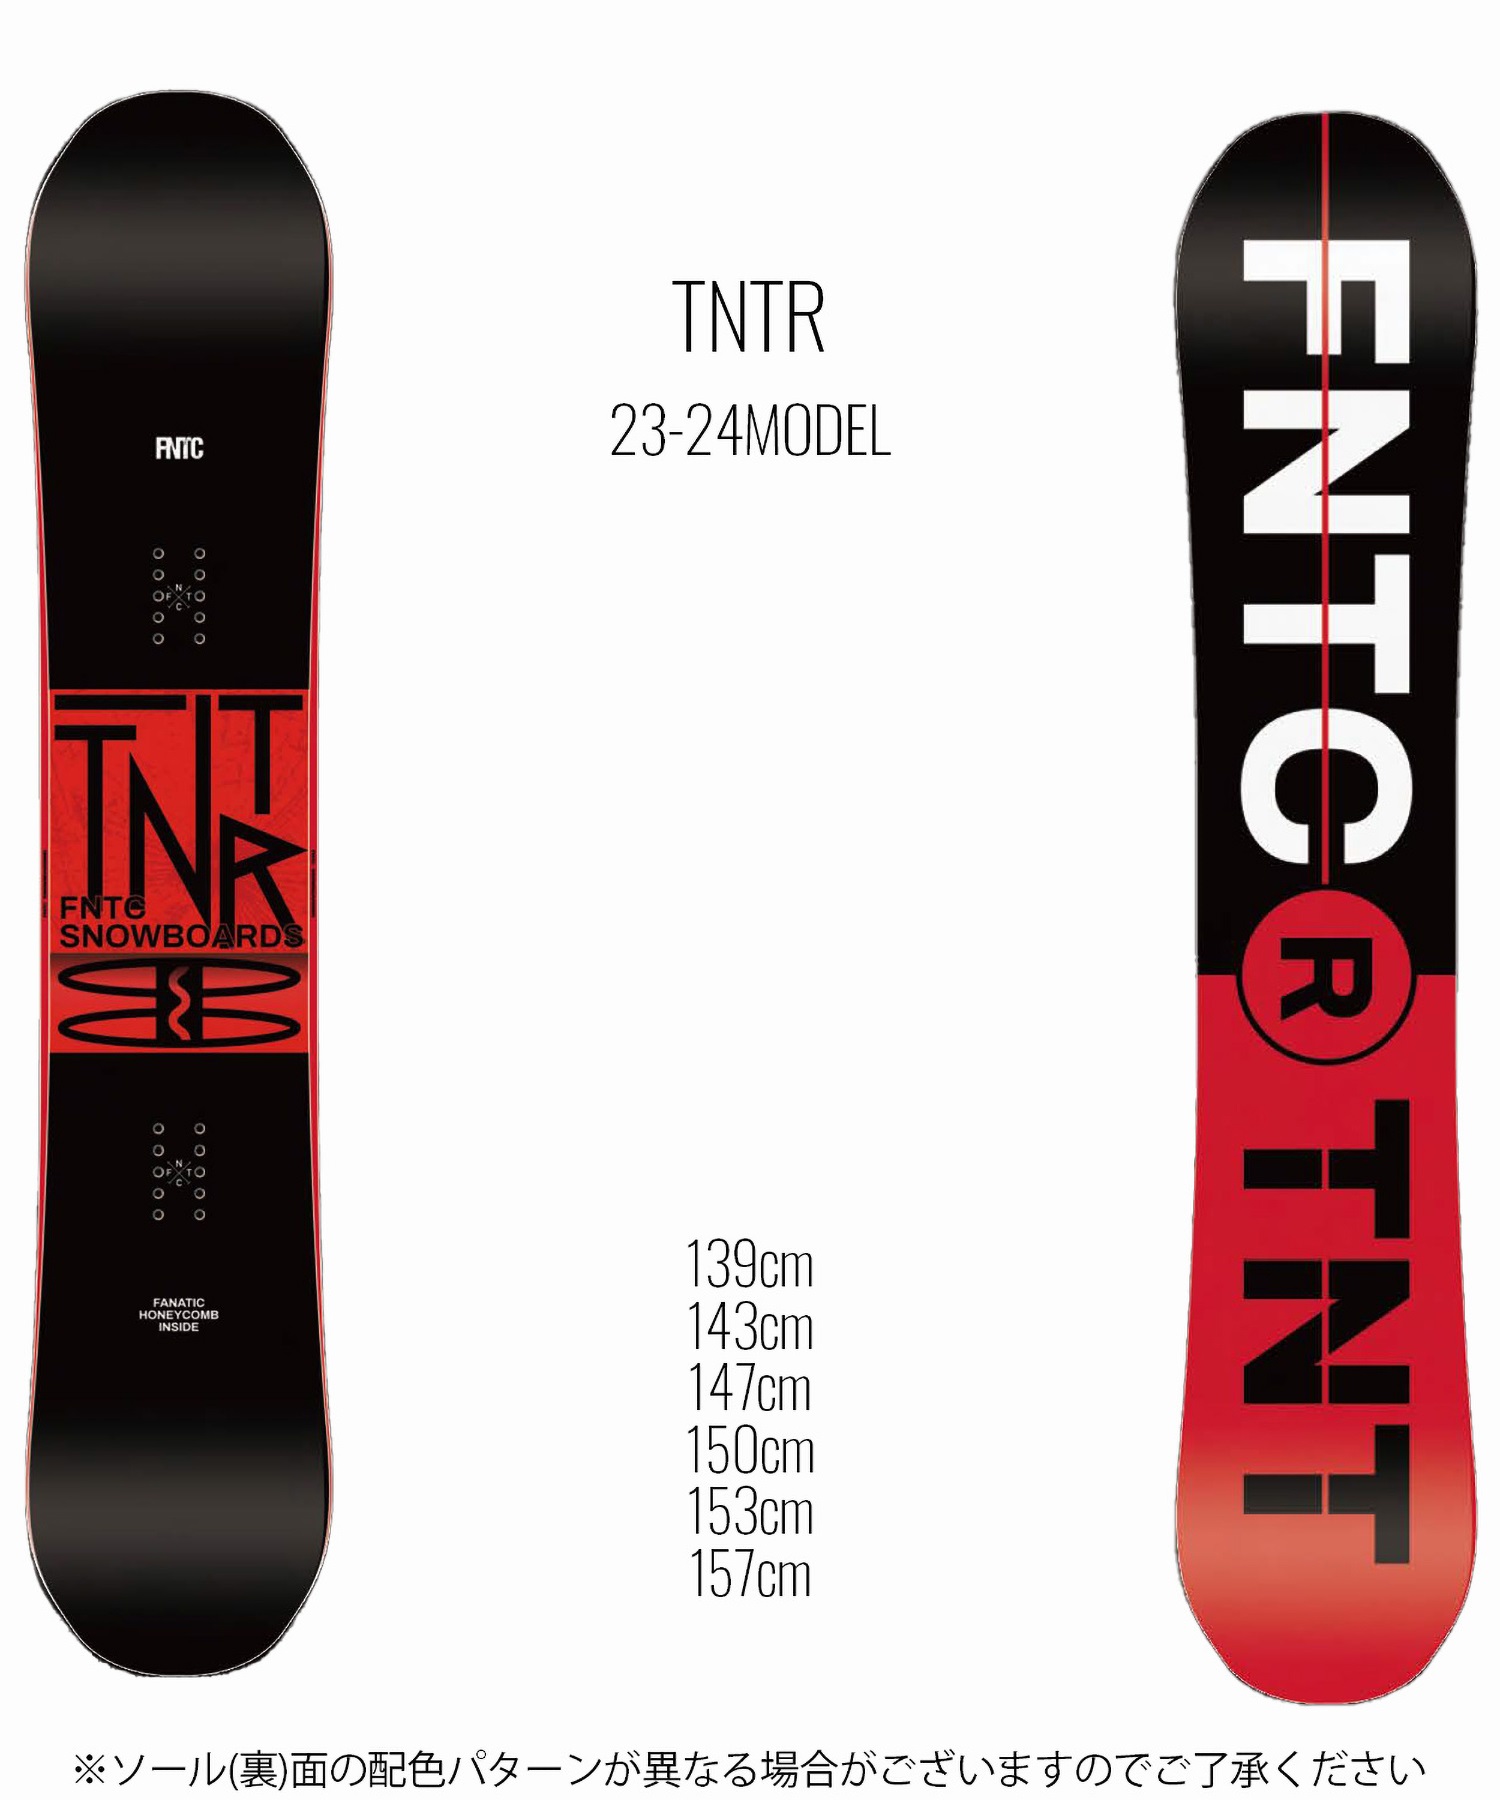 TNT スノーボード 板 - スノーボード